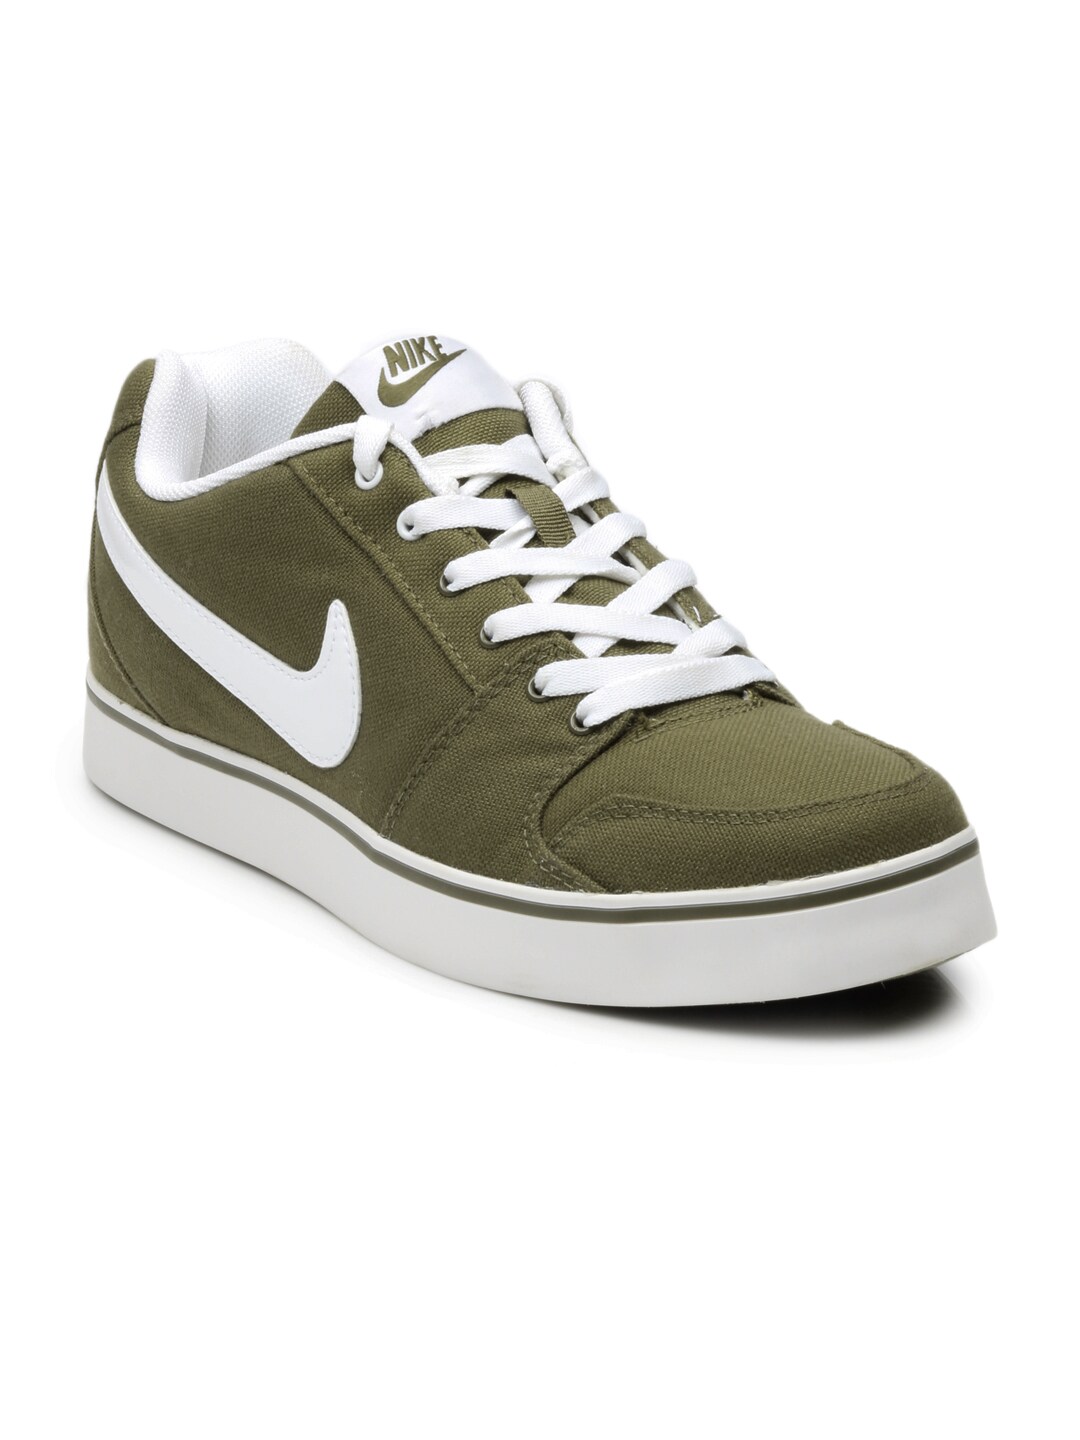 Nike Men Olive Green Liteforce Shoes